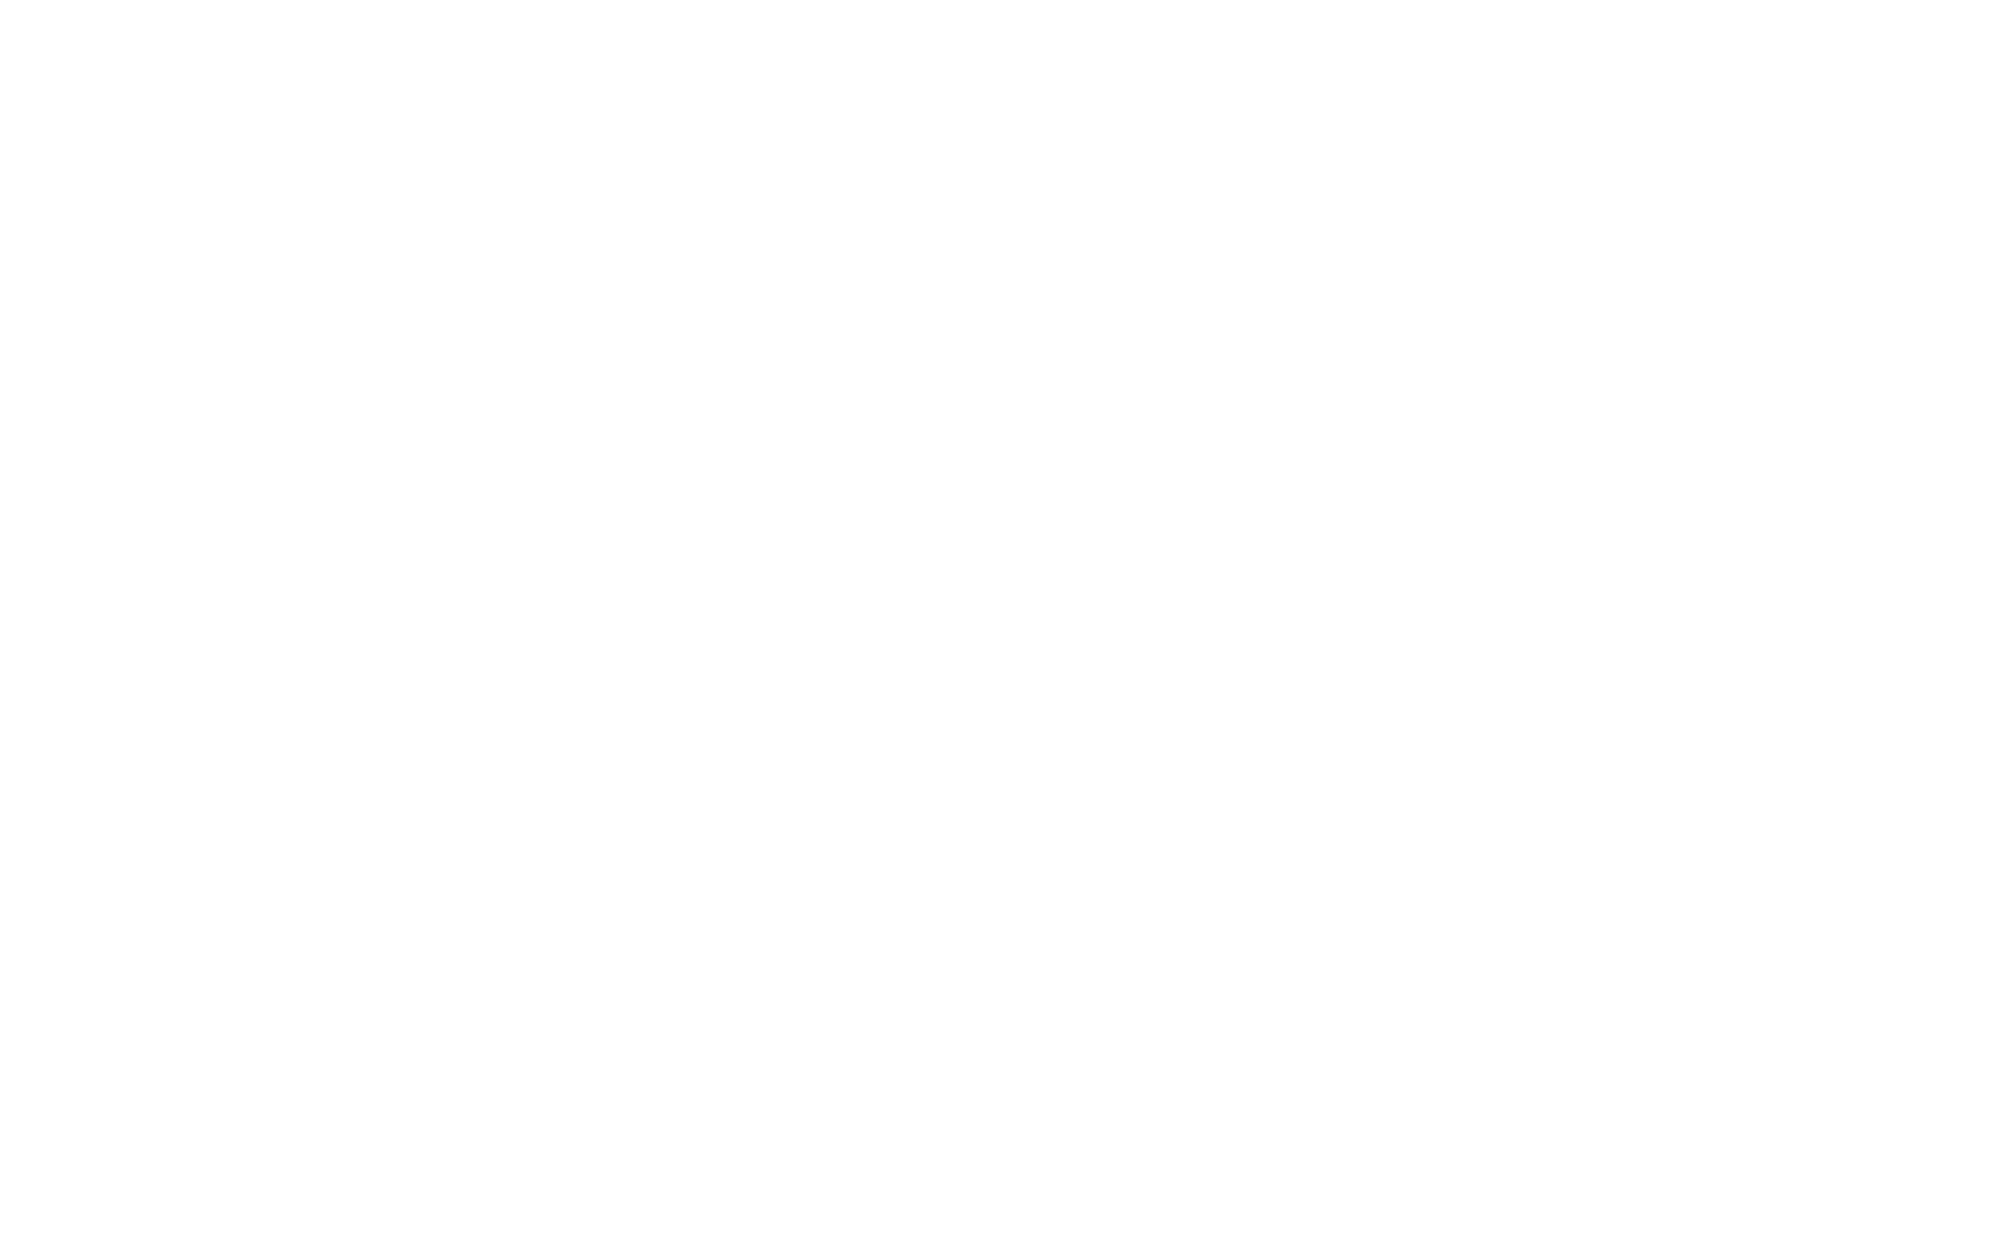 Strbunk